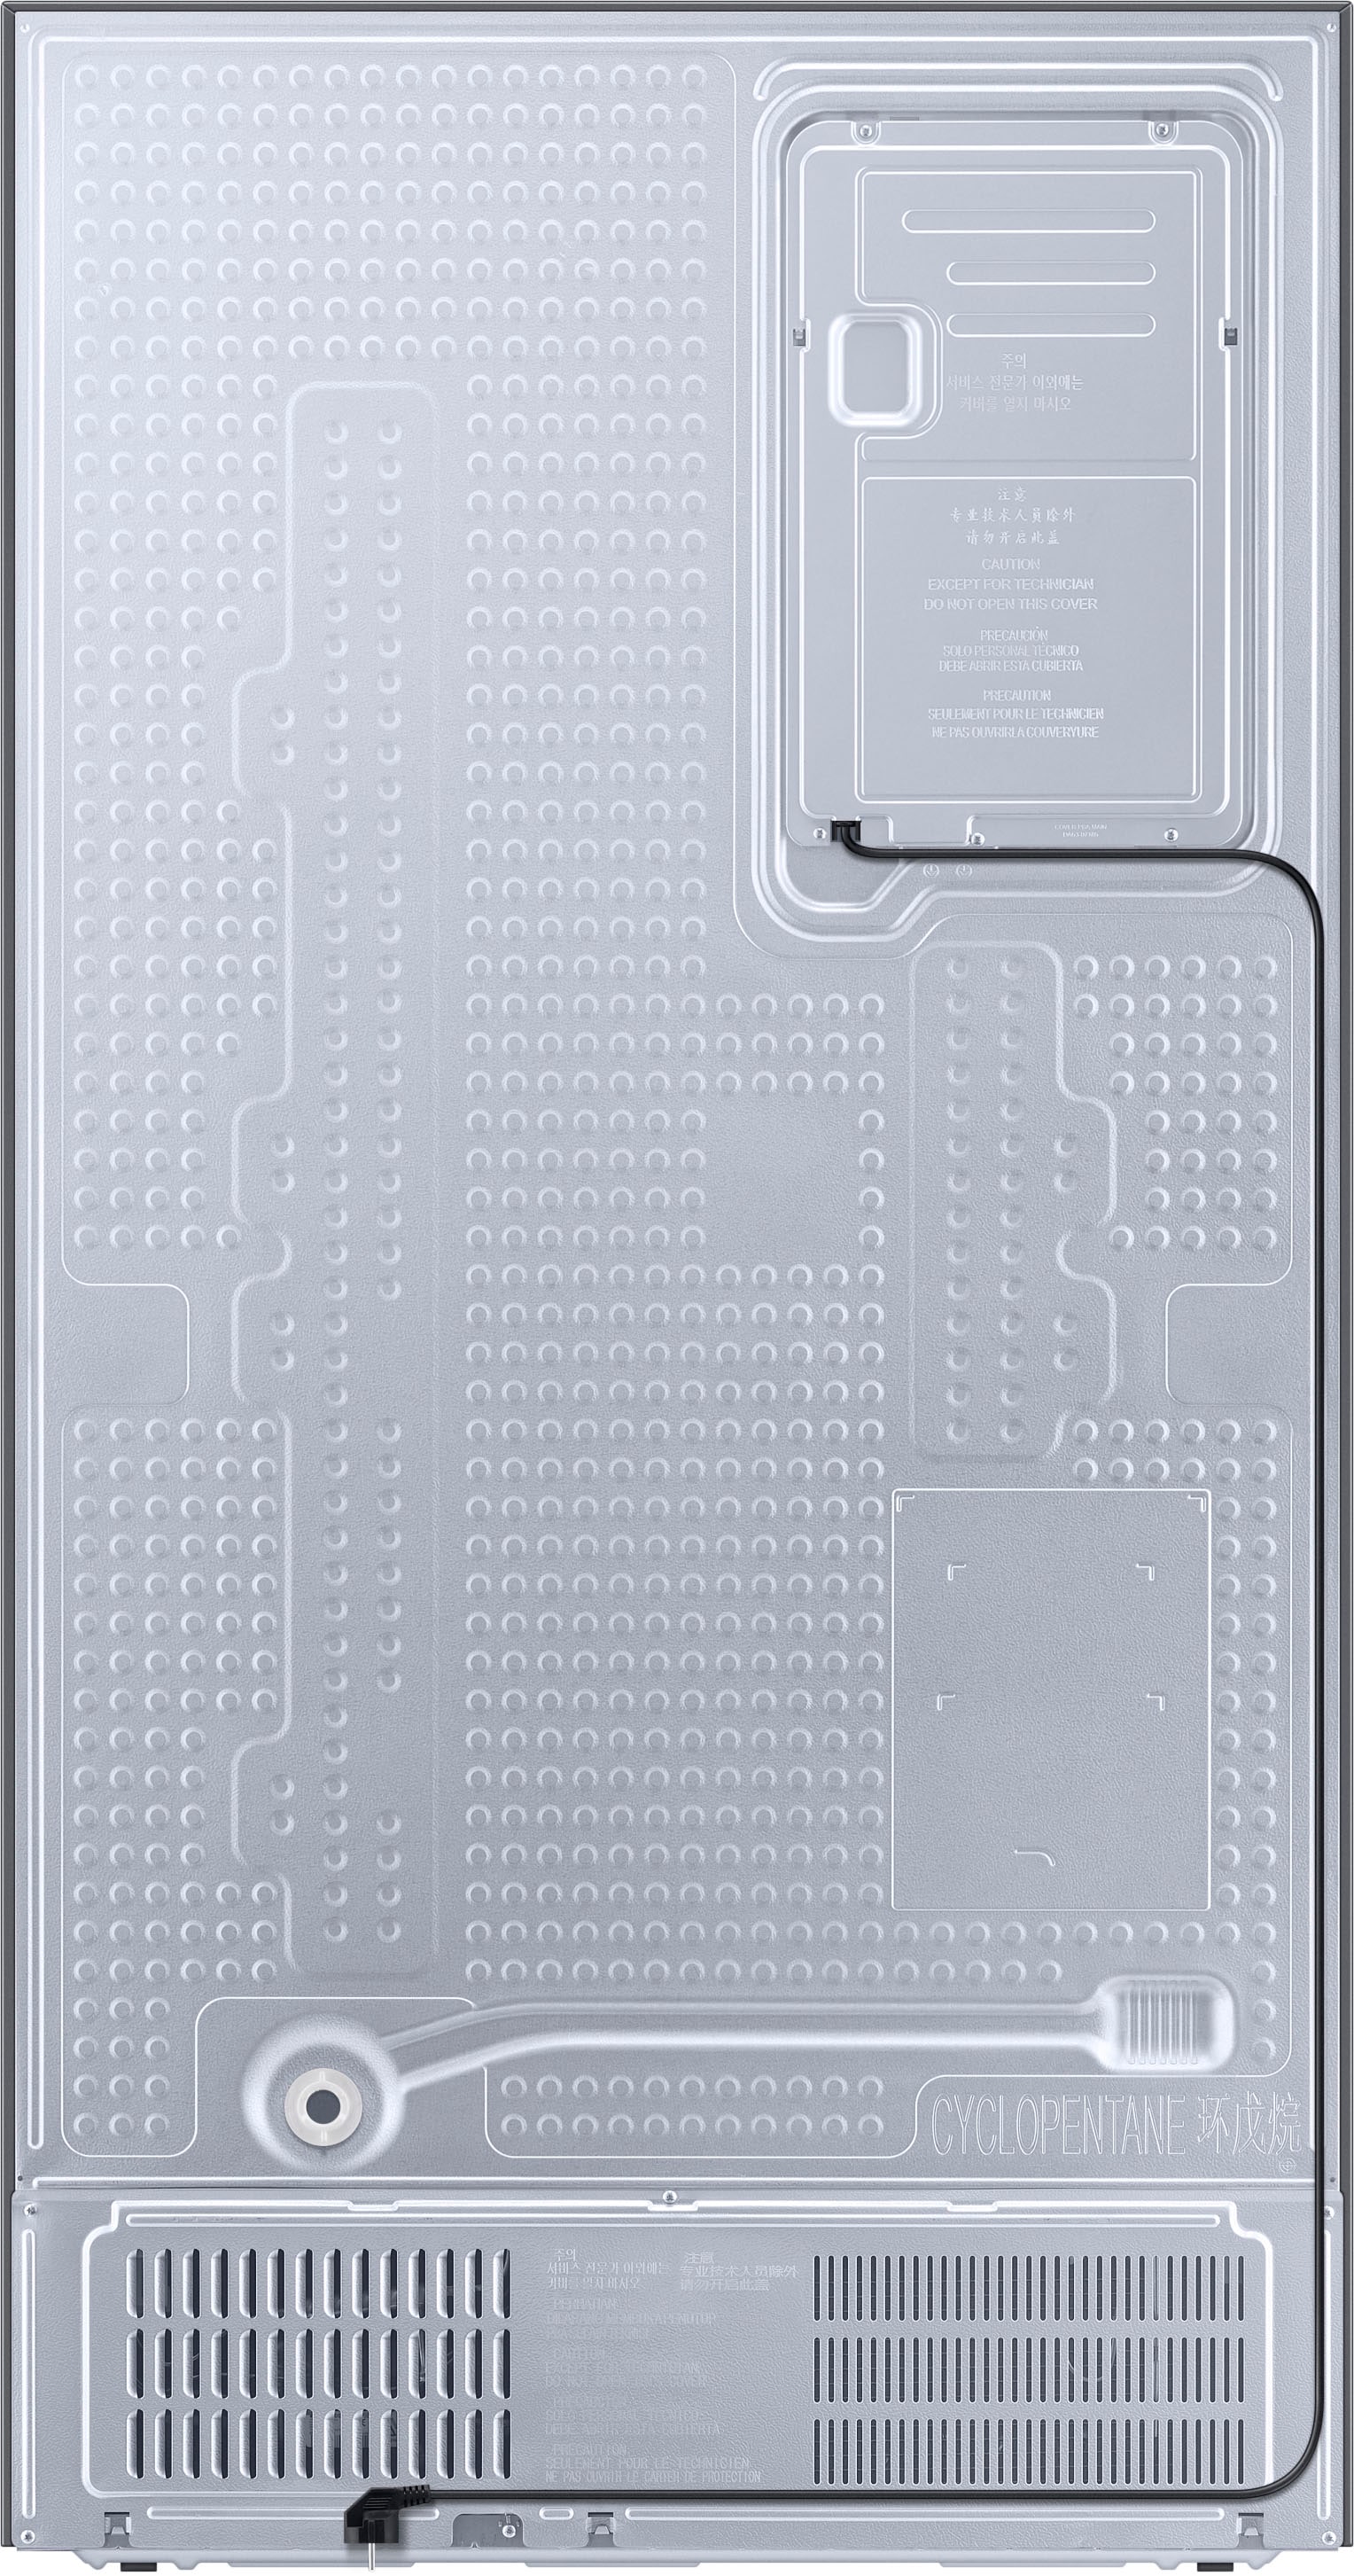 Samsung Side-by-Side »RS6JA8511S9/EG«, RS6JA8511S9, 178,0 cm hoch, 91,2 cm breit, mit Wassertank